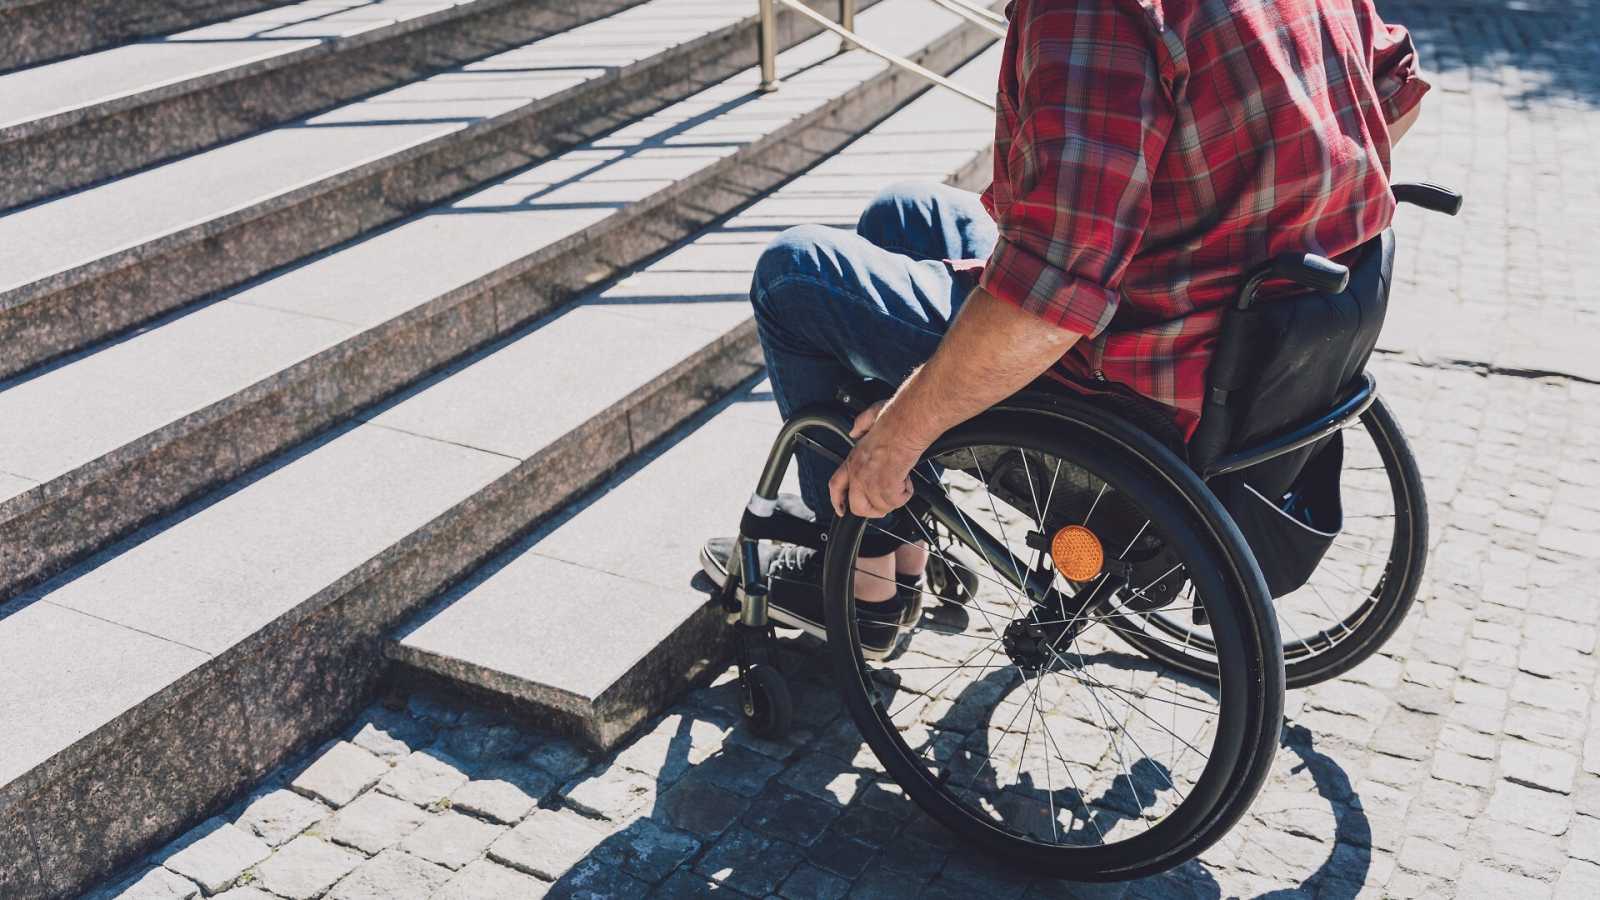 Ambulàncies sense espai, rampes espatllades i altres “errors” que llastren l’accessibilitat en cadira de rodes